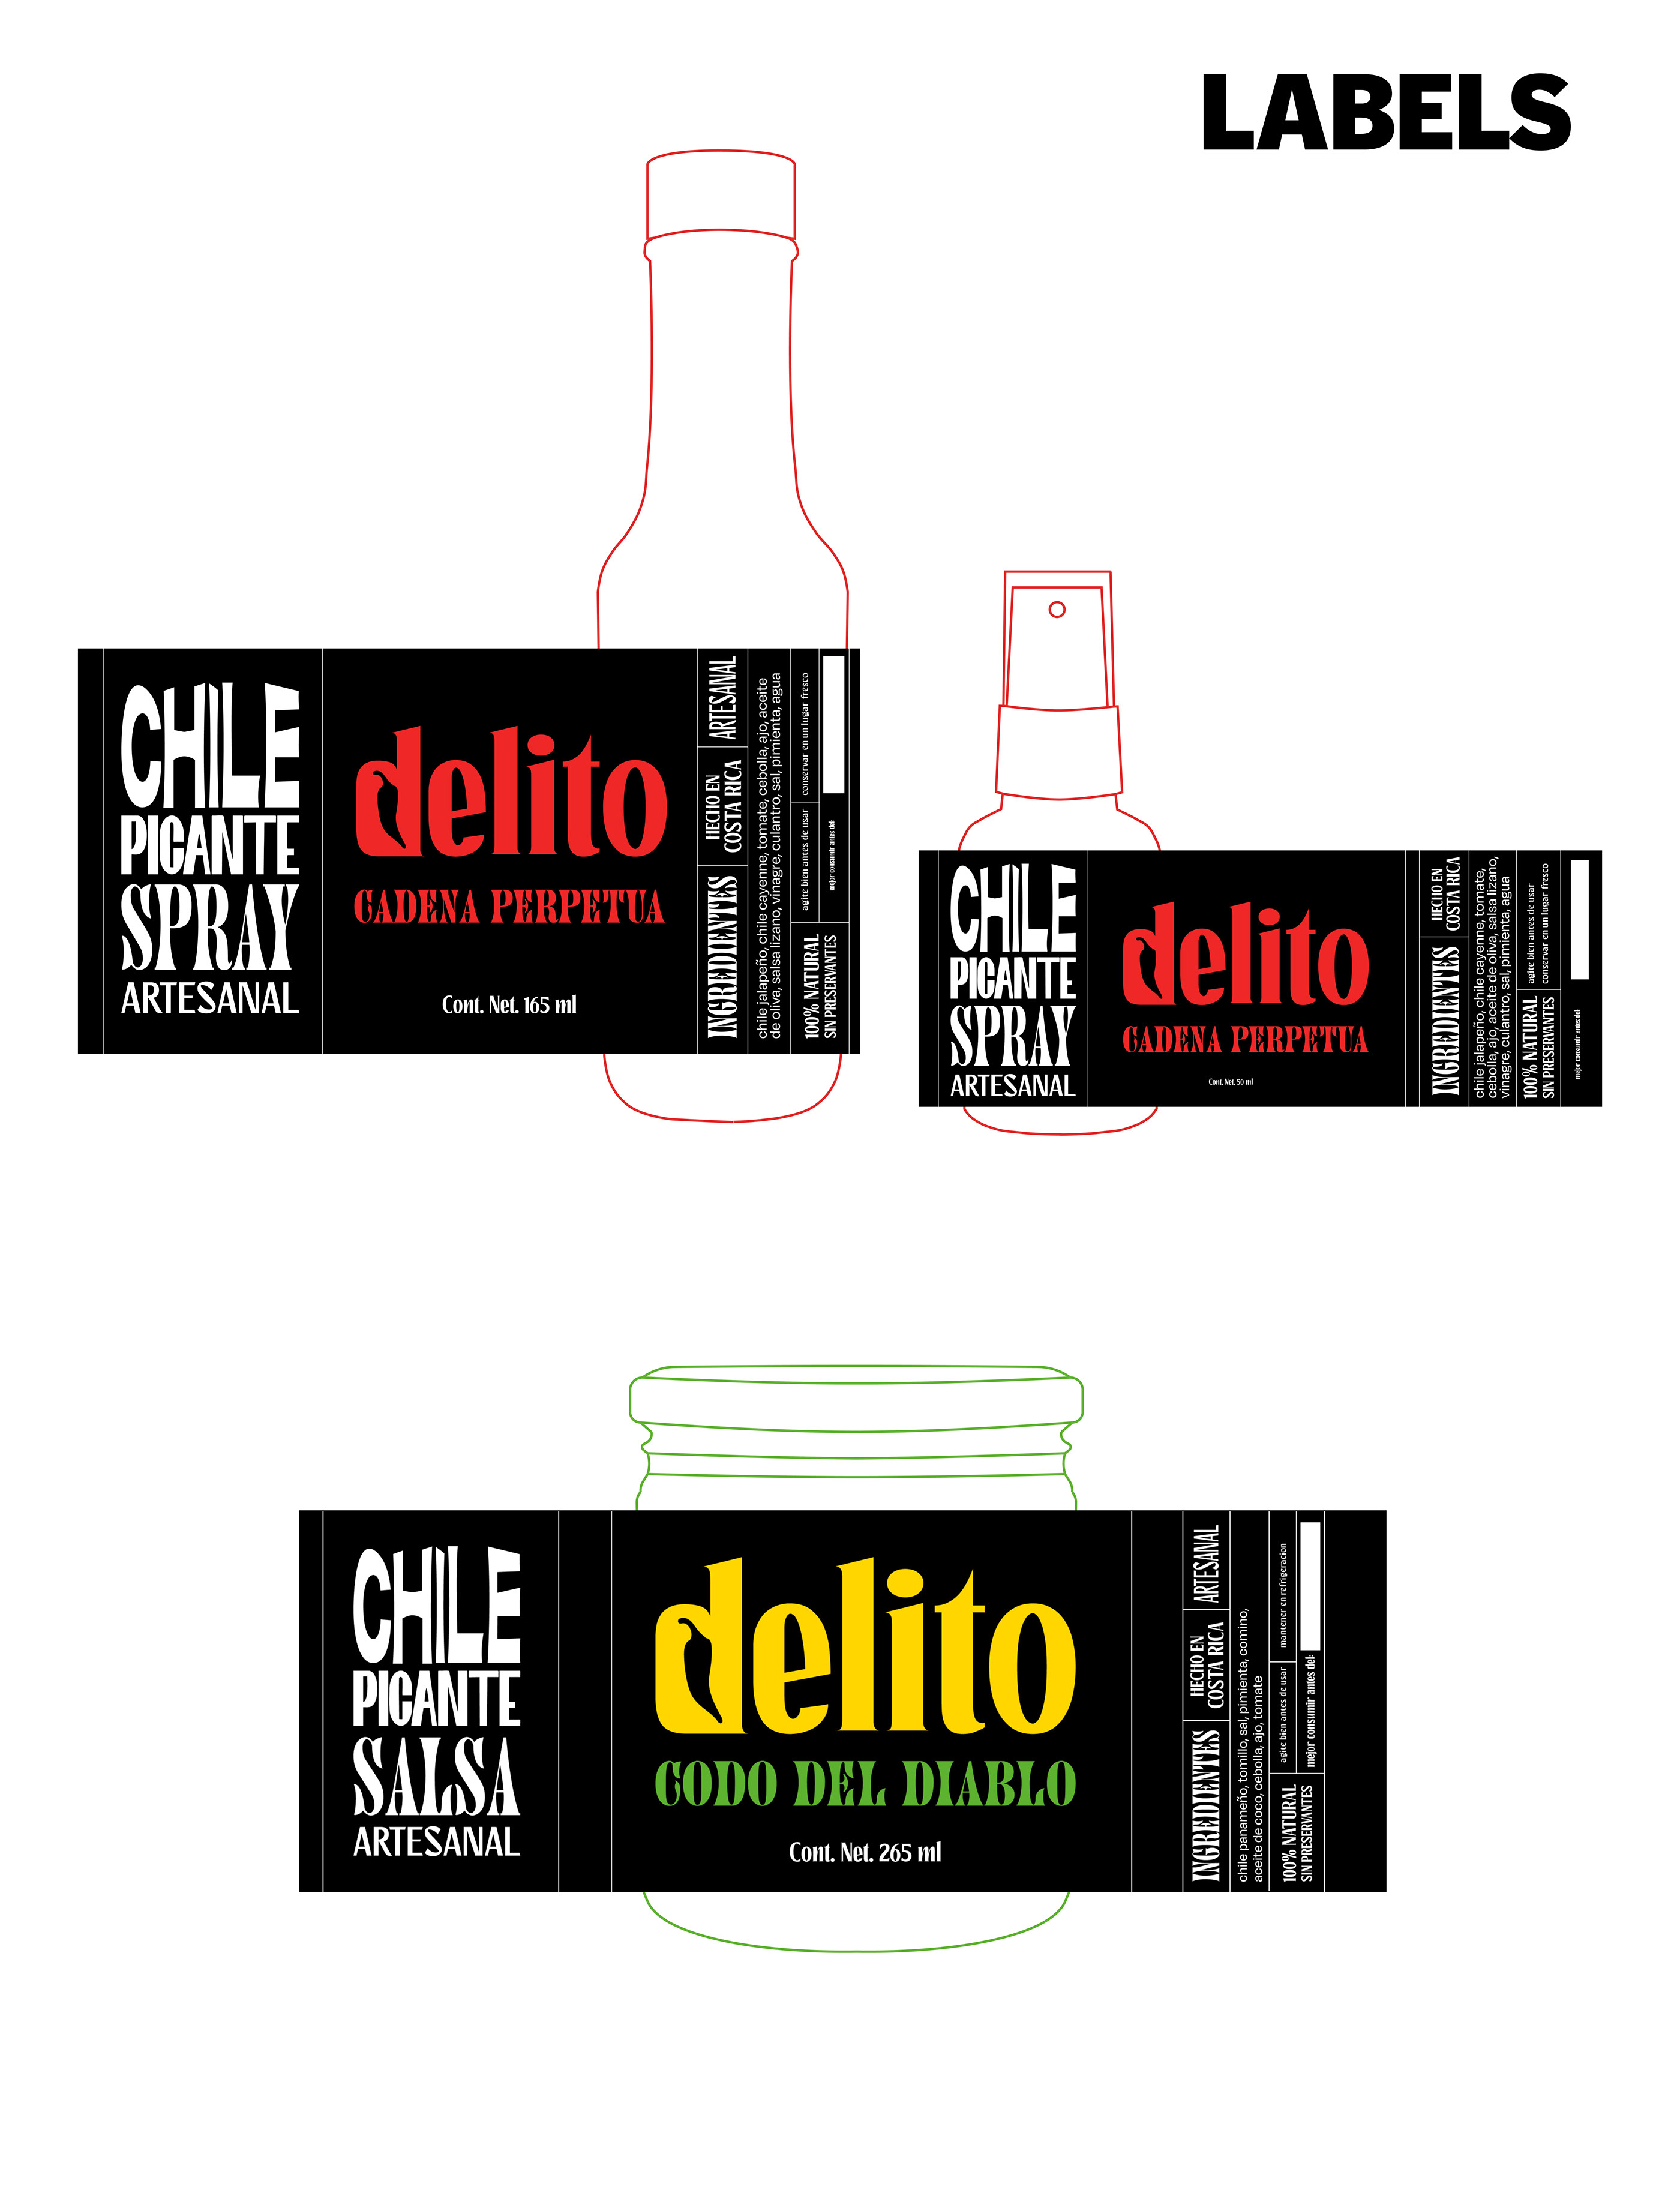 Delito. Brand concept